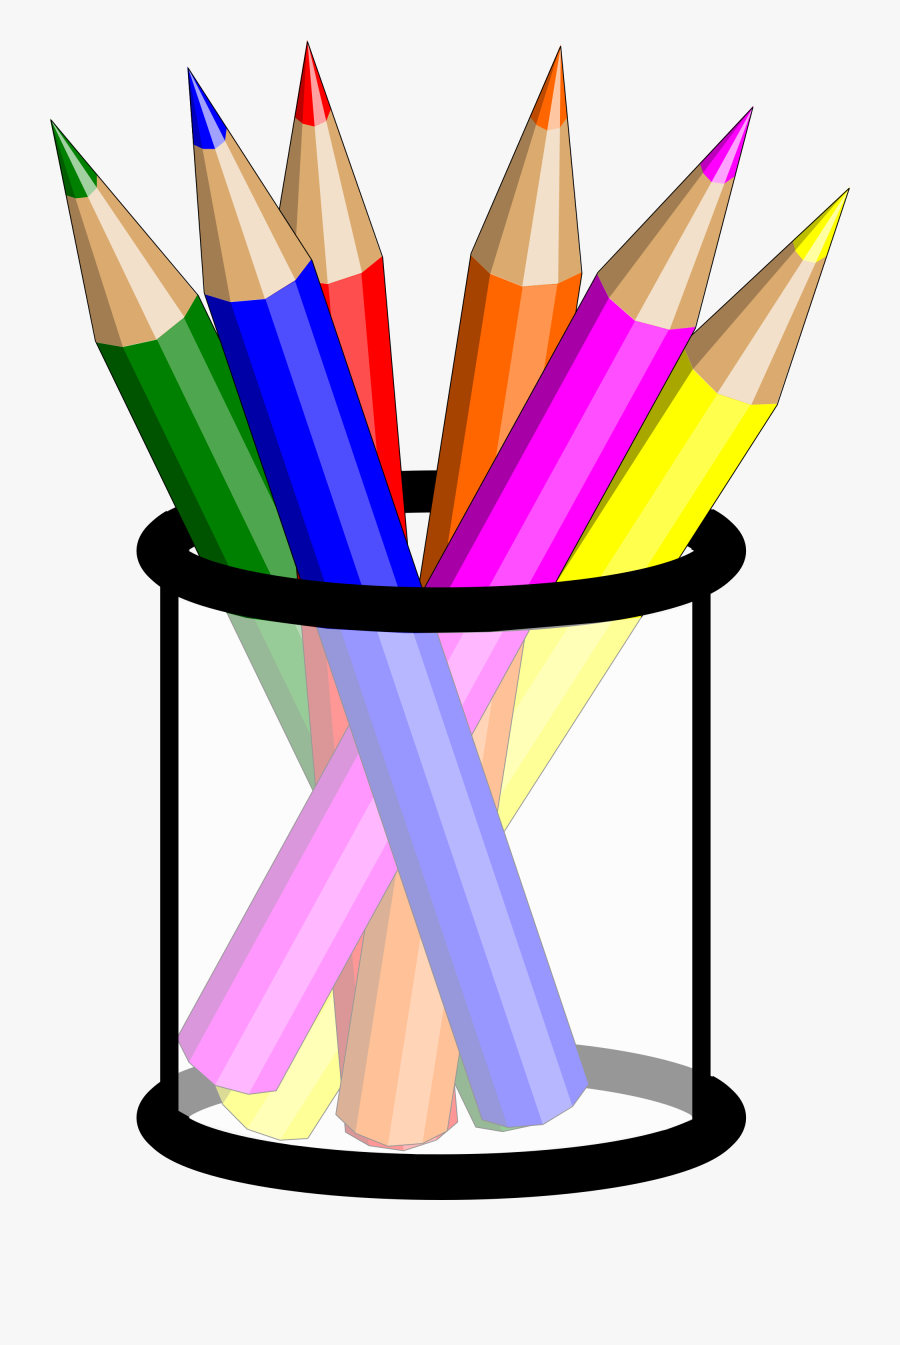 Pencils In A Cup Clipart - Colouring Pencils Clip Art, Transparent Clipart